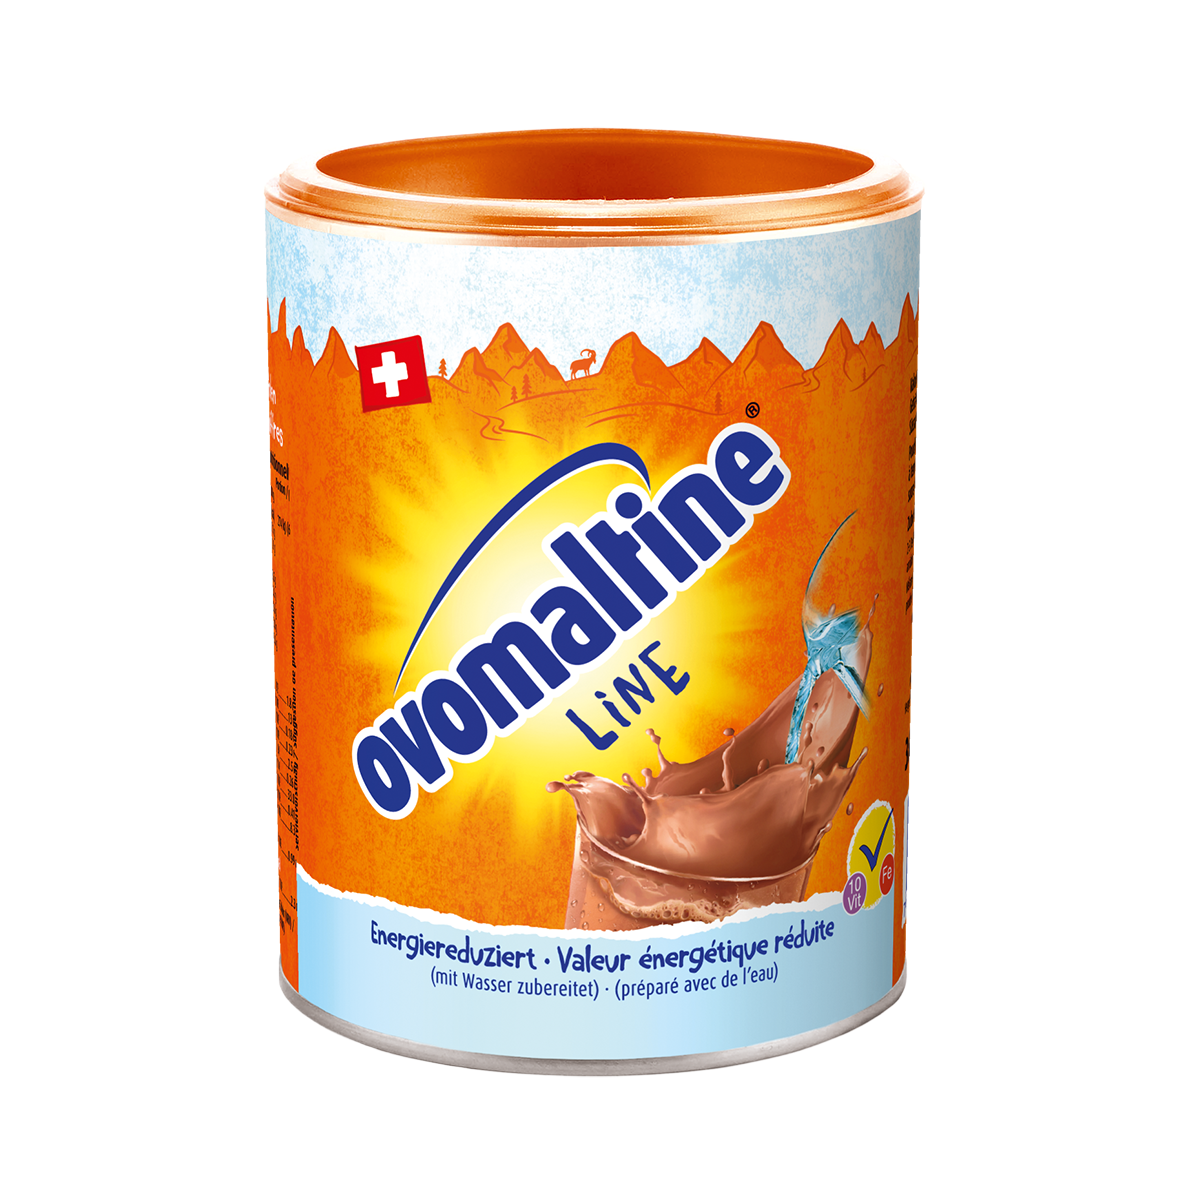  Ovomaltine Line - la poudre de cacao pour les diabétiques